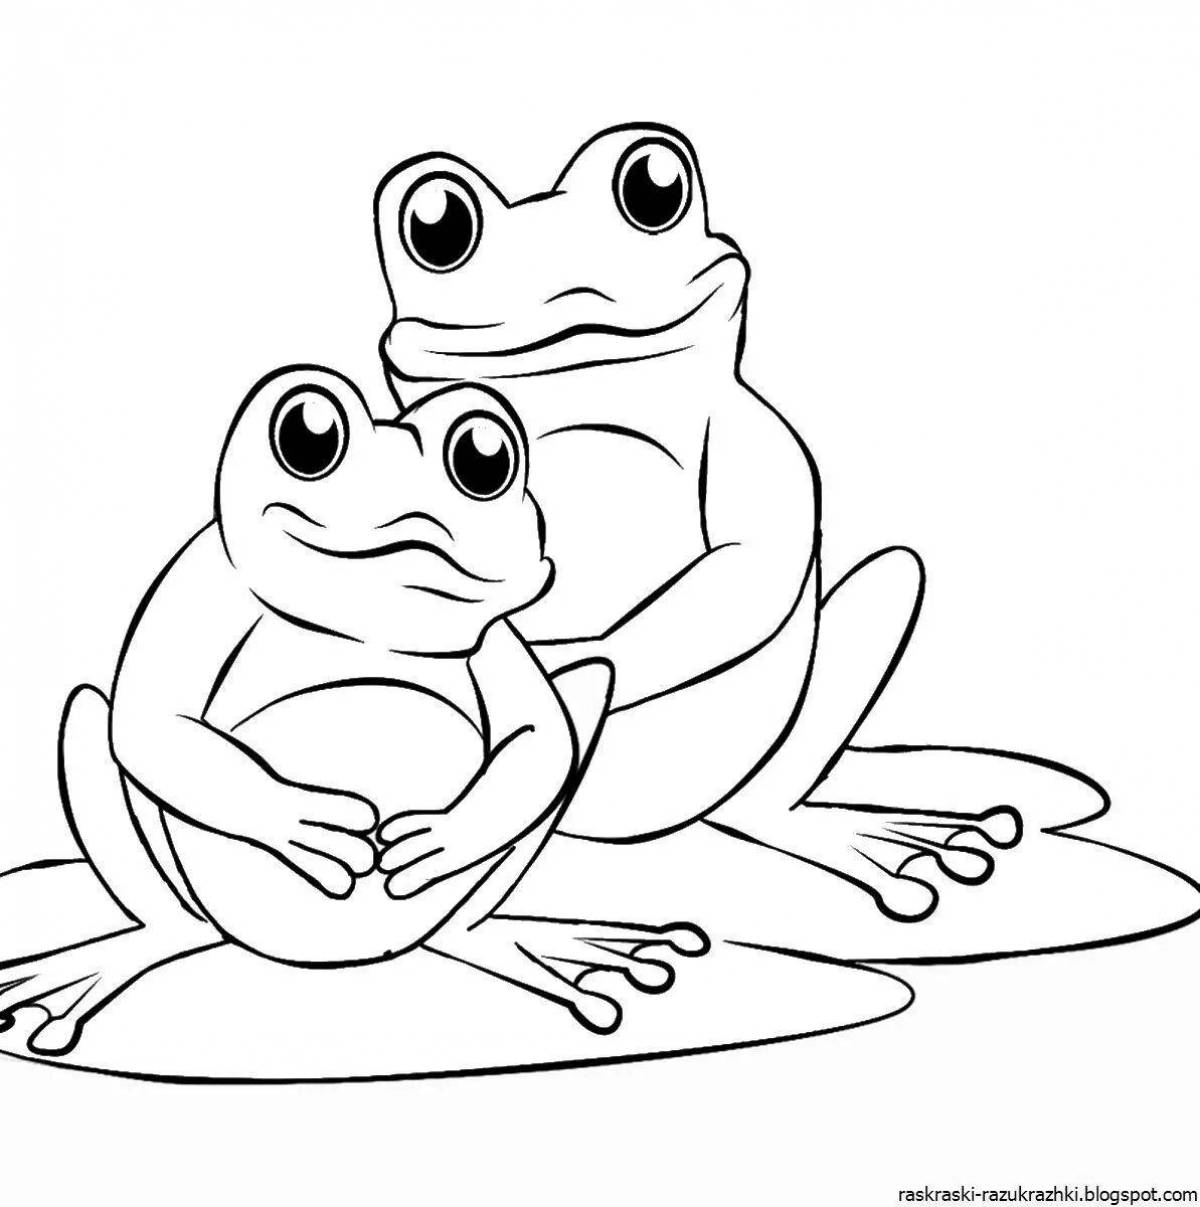 Красочная страница раскраски жаб для детей